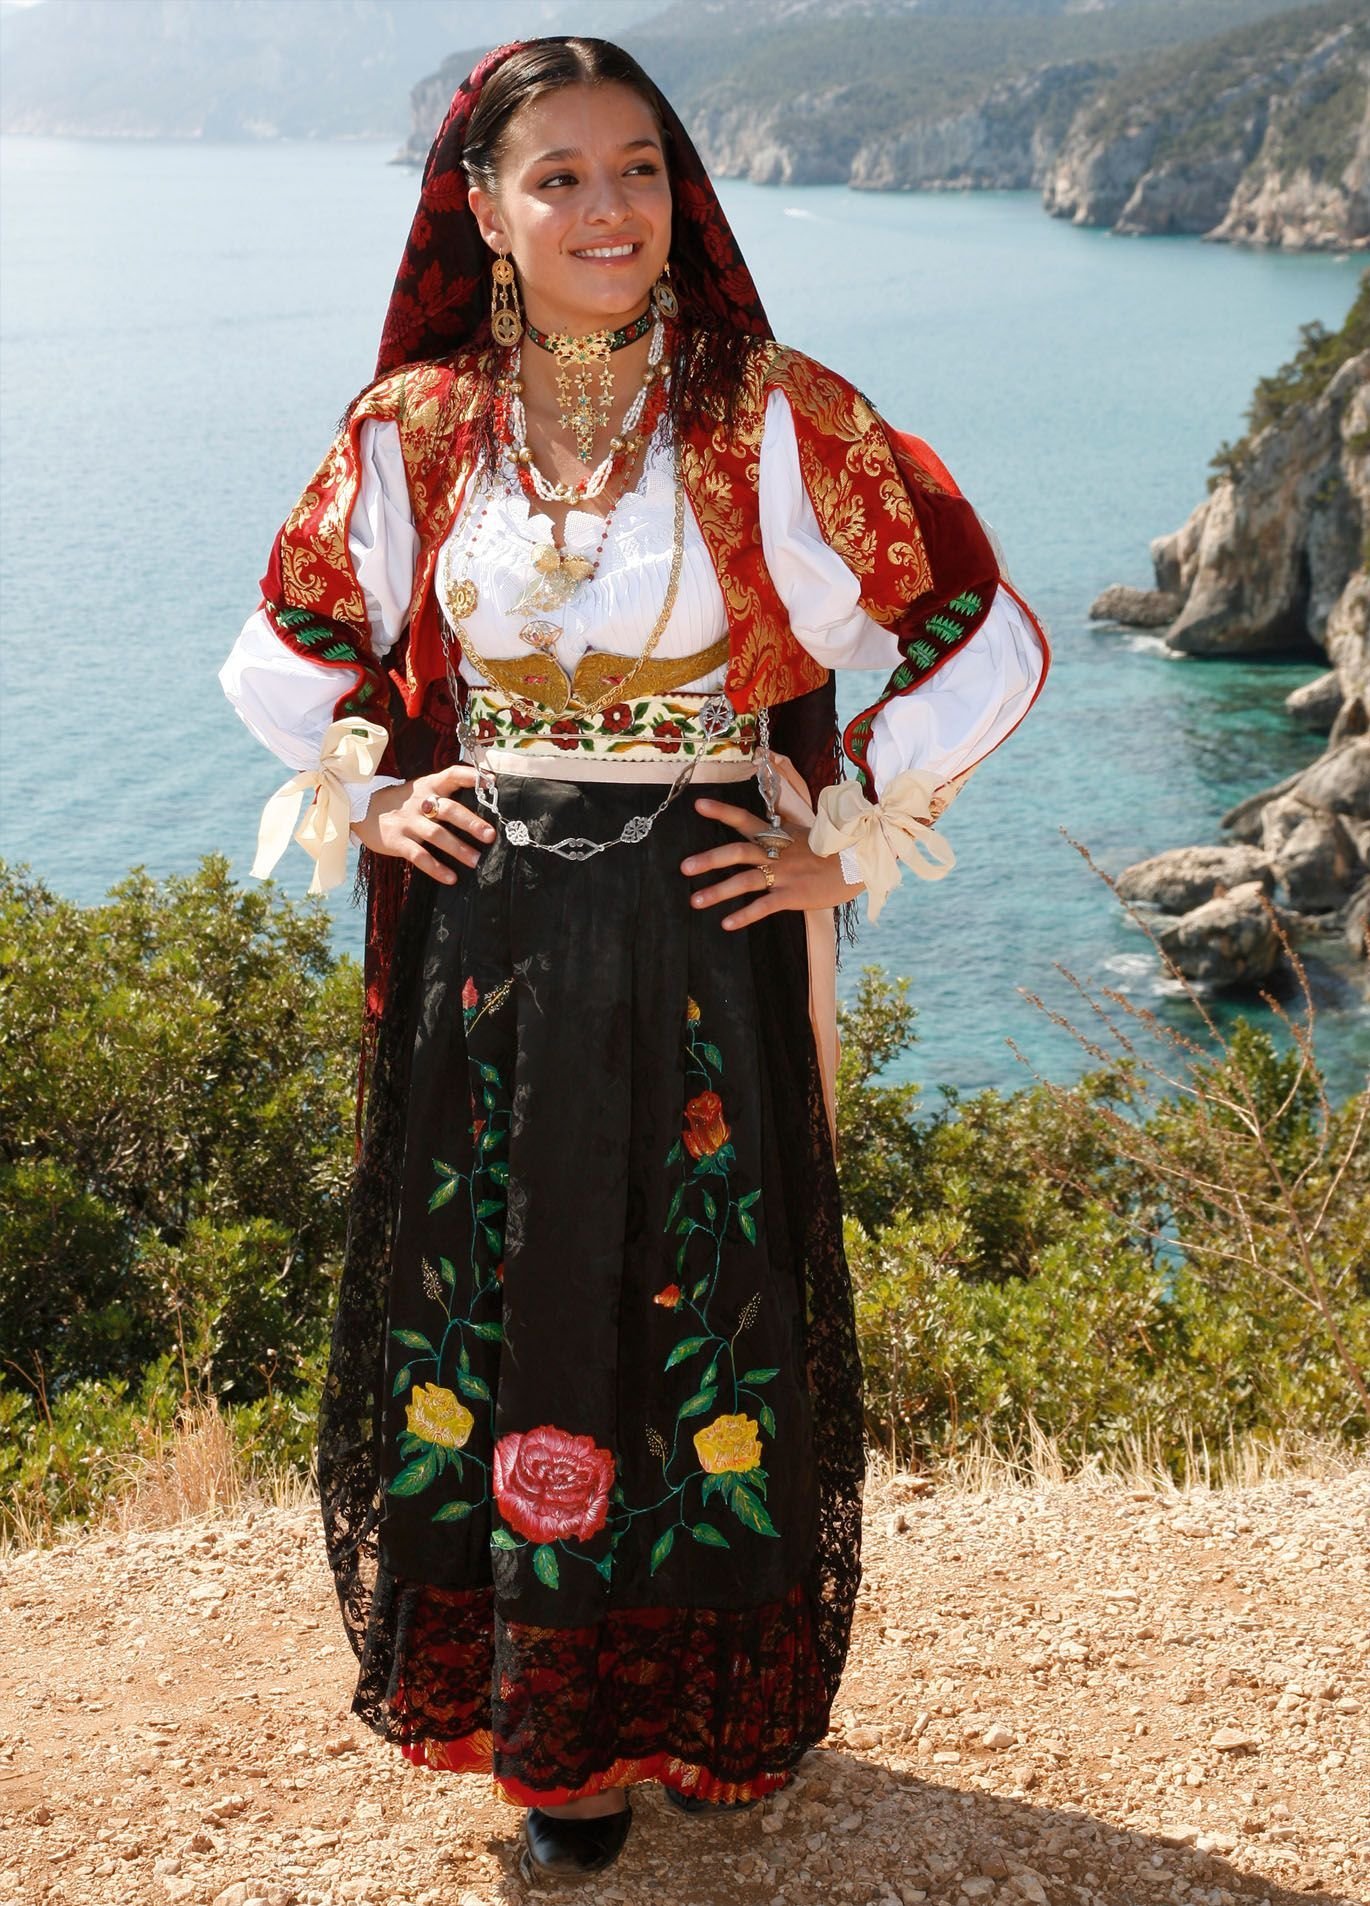 Дама народу. Национальный костюм Италии Сардиния. Албания национальный костюм. Италия национальный костюм Италии. Национальный костюм Болгар.